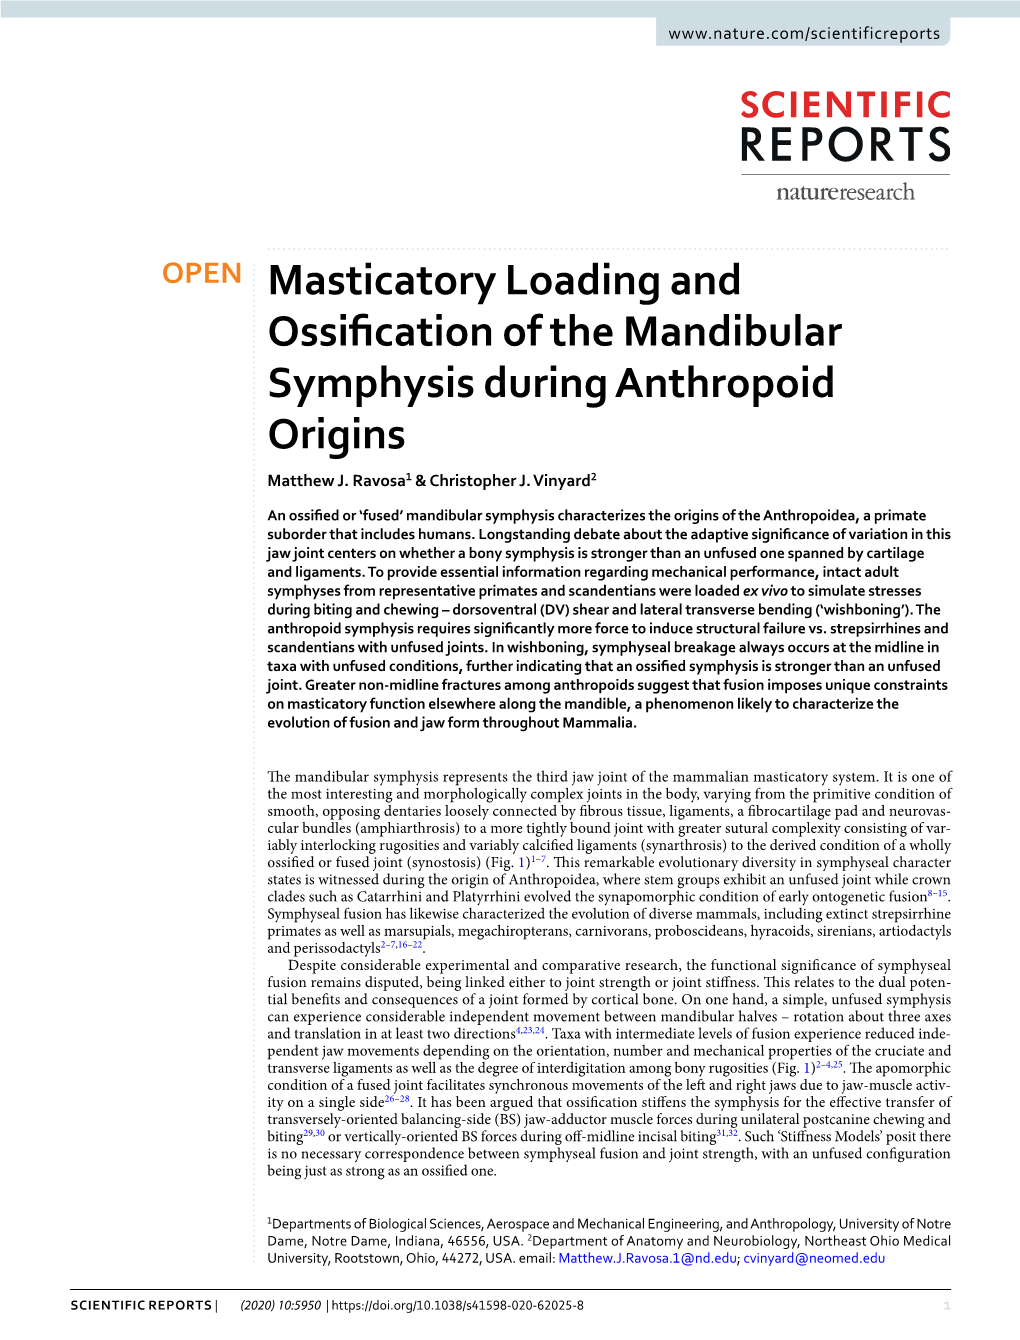 Masticatory Loading and Ossification of the Mandibular Symphysis During